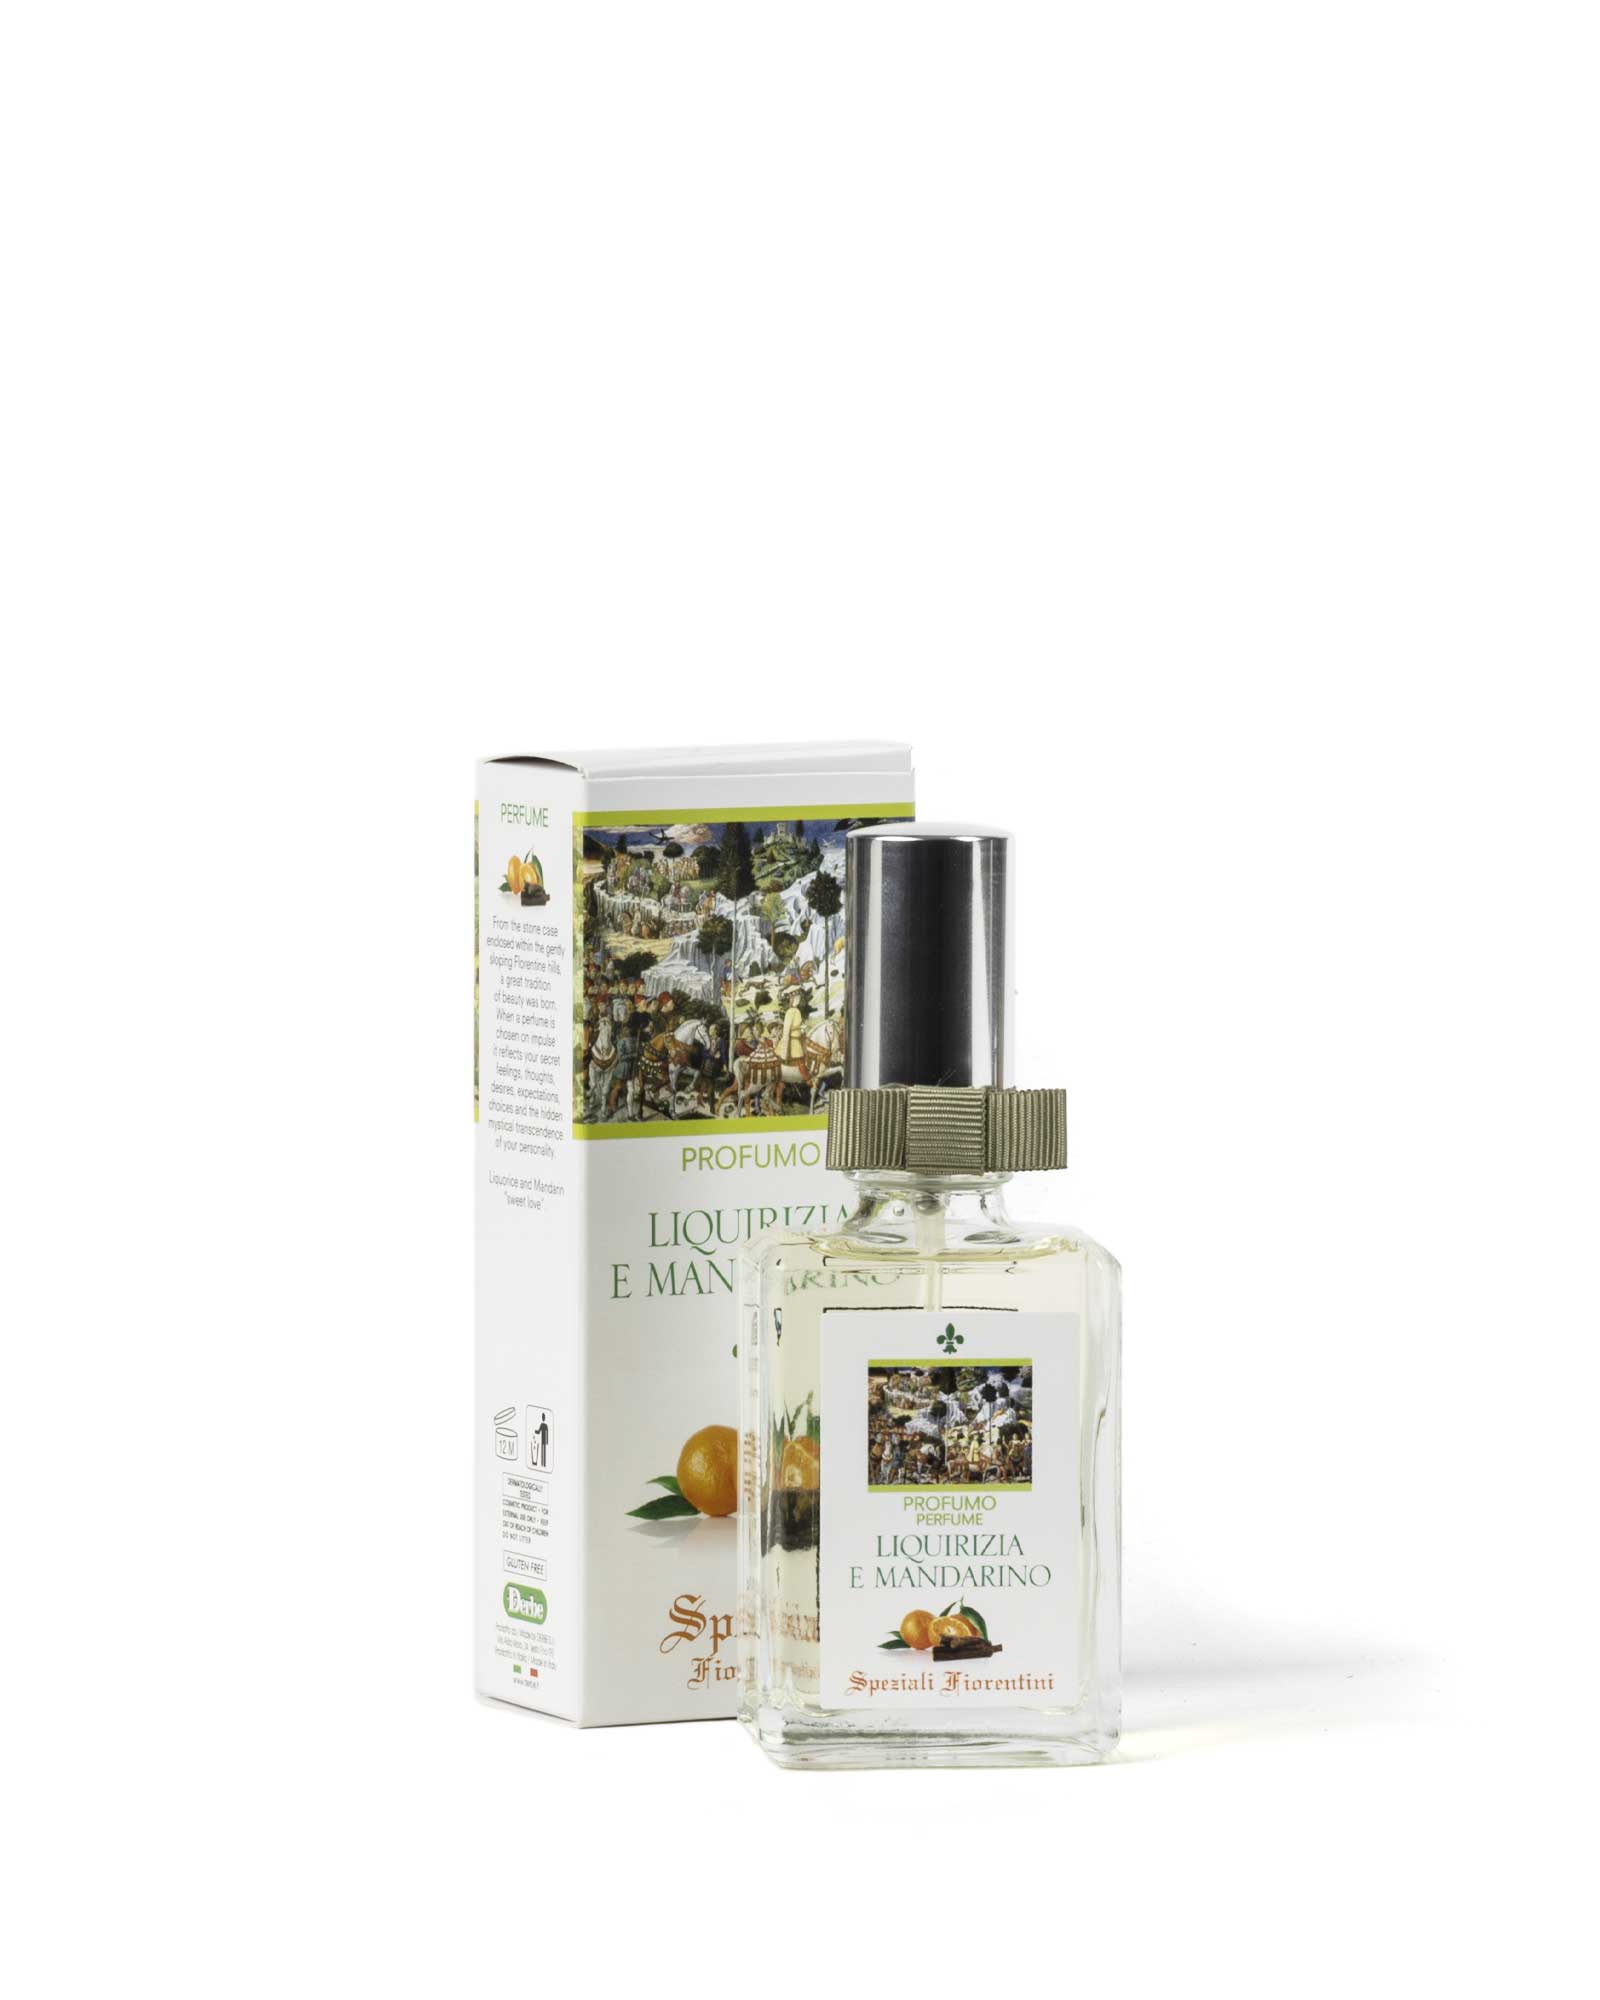 Perfume Licorice and mandarin – Speziali Fiorentini – Derbe